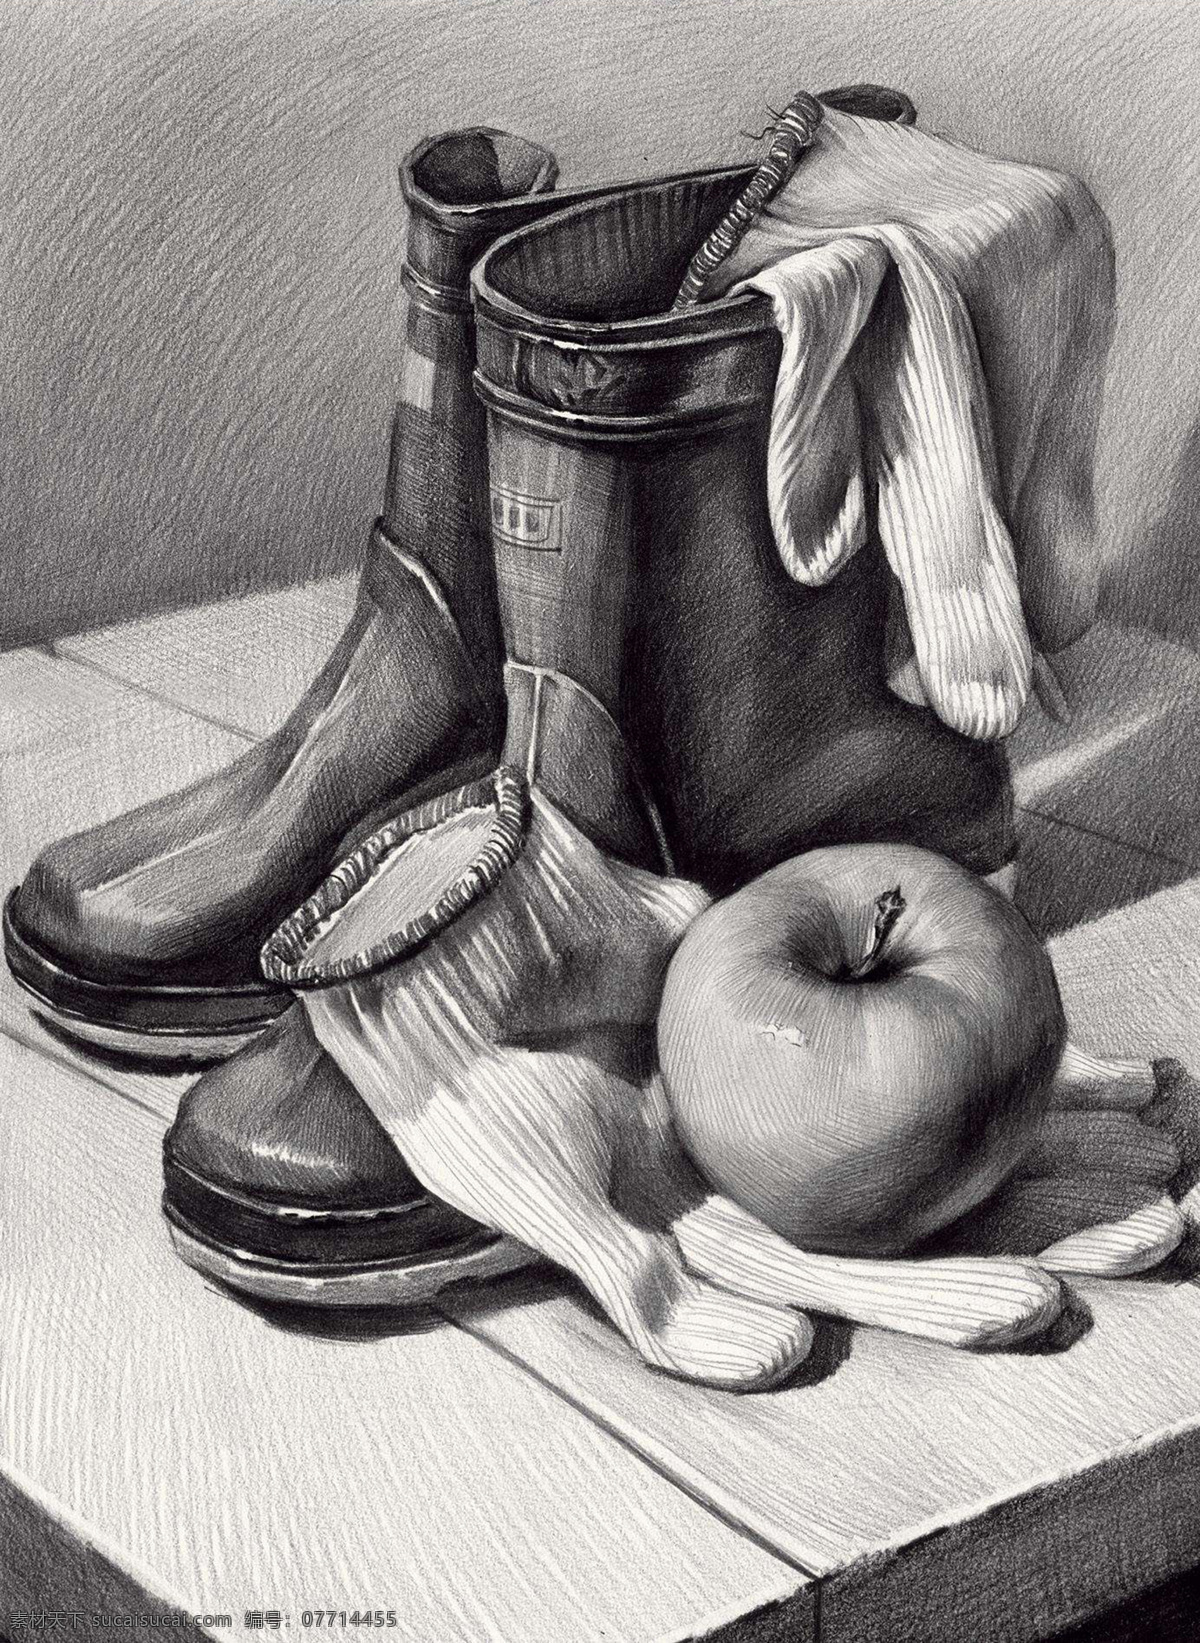 素描 素描静物 静物素描 素描作品 靴子 苹果 手套 艺术绘画 文化艺术 绘画书法